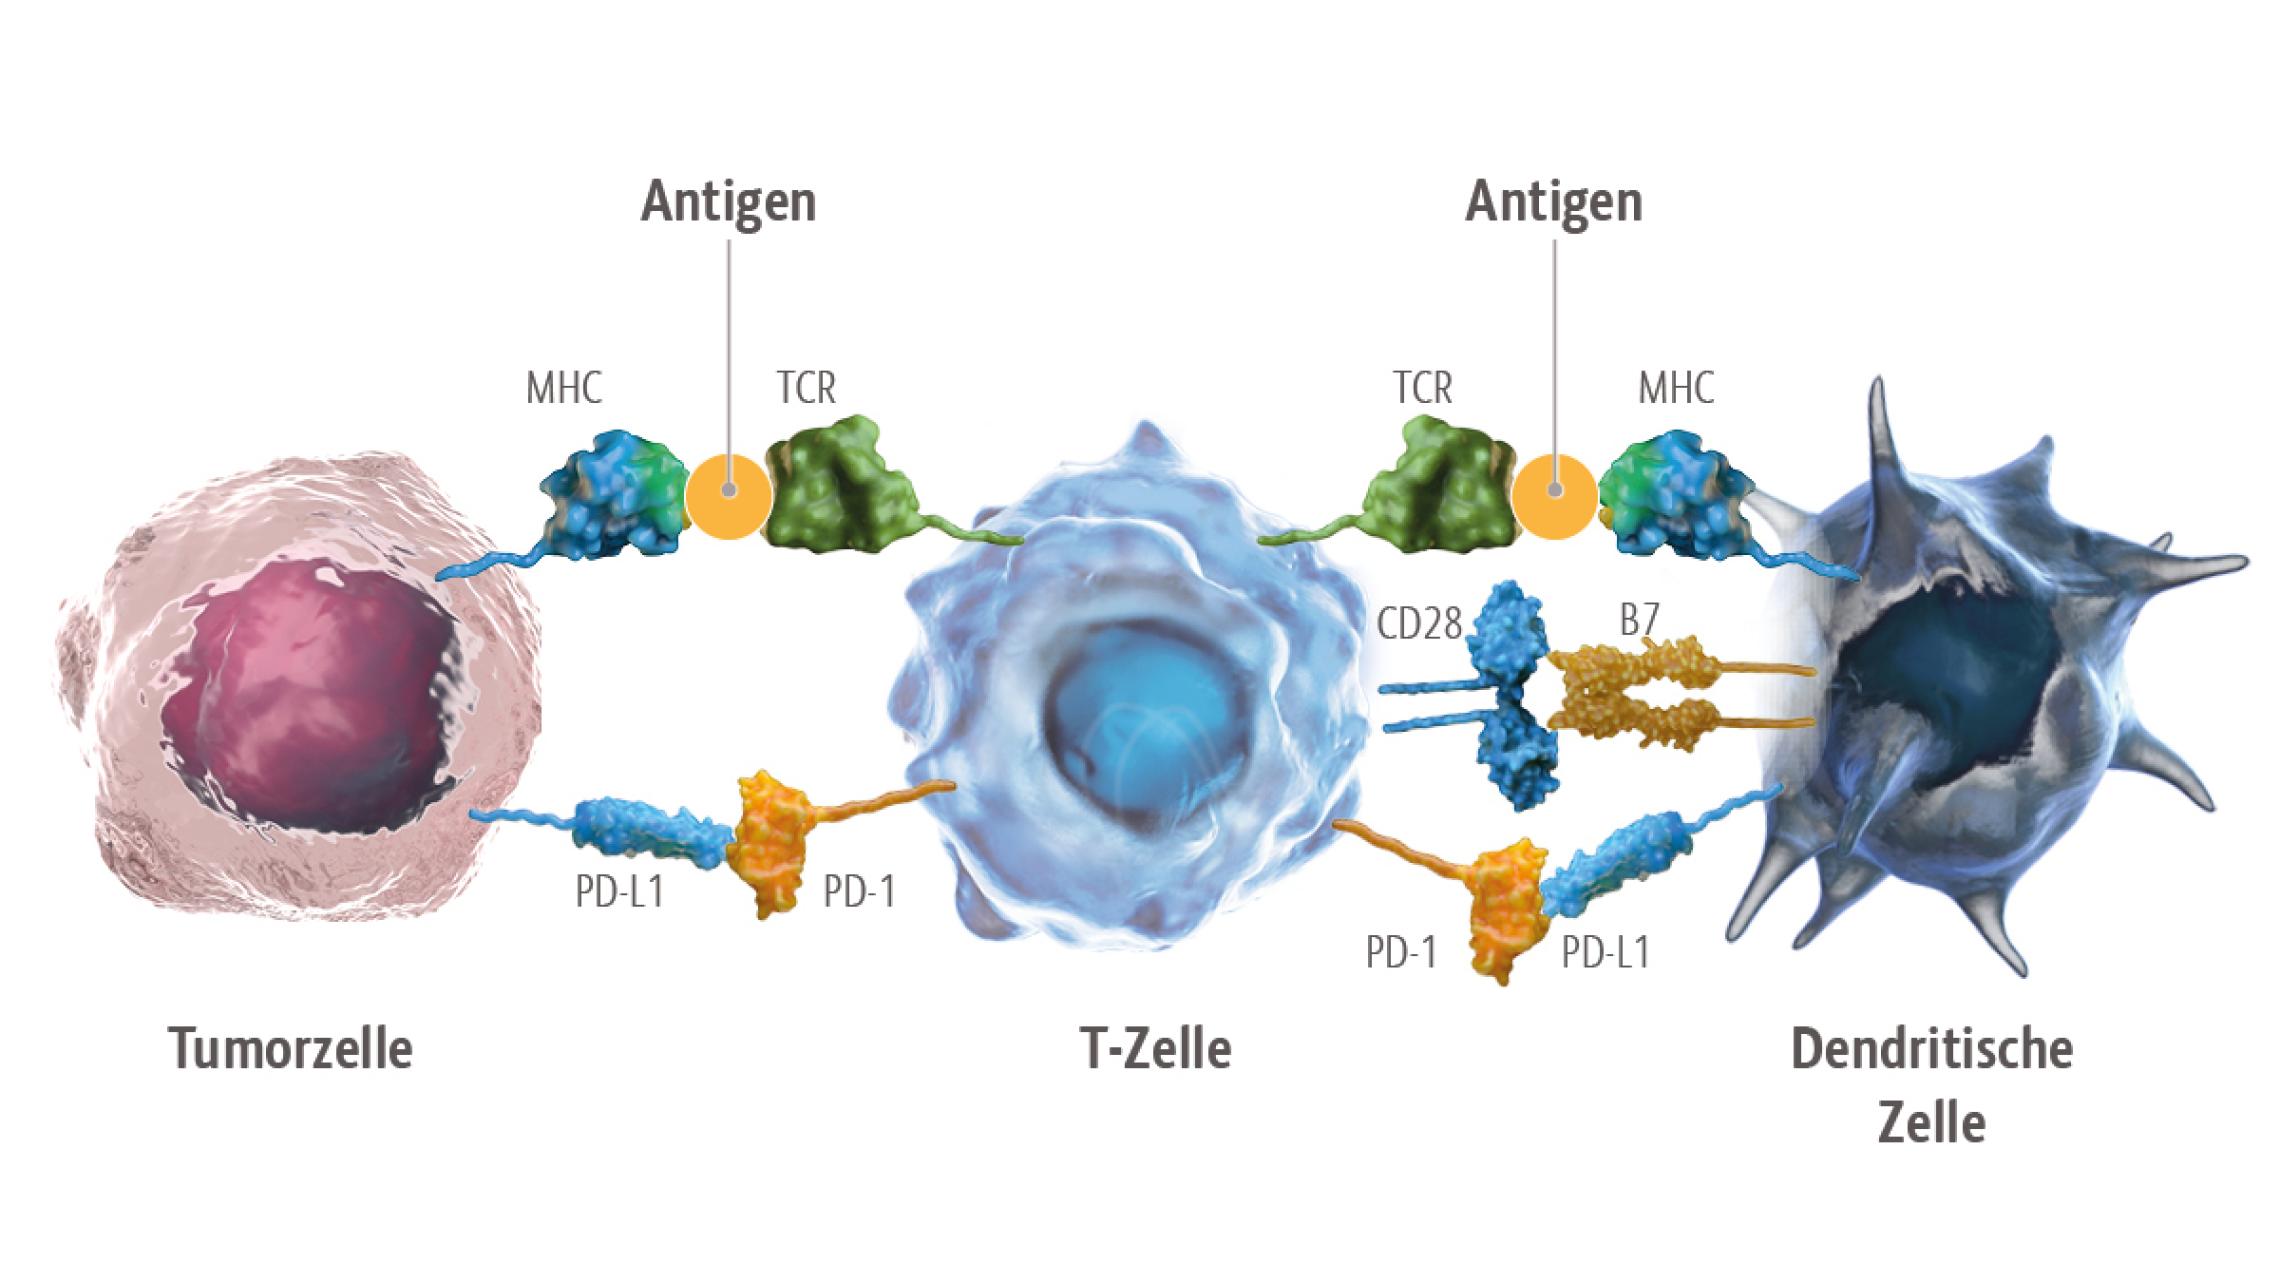 Die Inhibition von PD-1 auf T-Zellen führt zu einer Reaktivierung der antitumoralen Immunaktivität und damit zu einer Zerstörung von Tumorzellen durch das körpereigene Immunsystem.